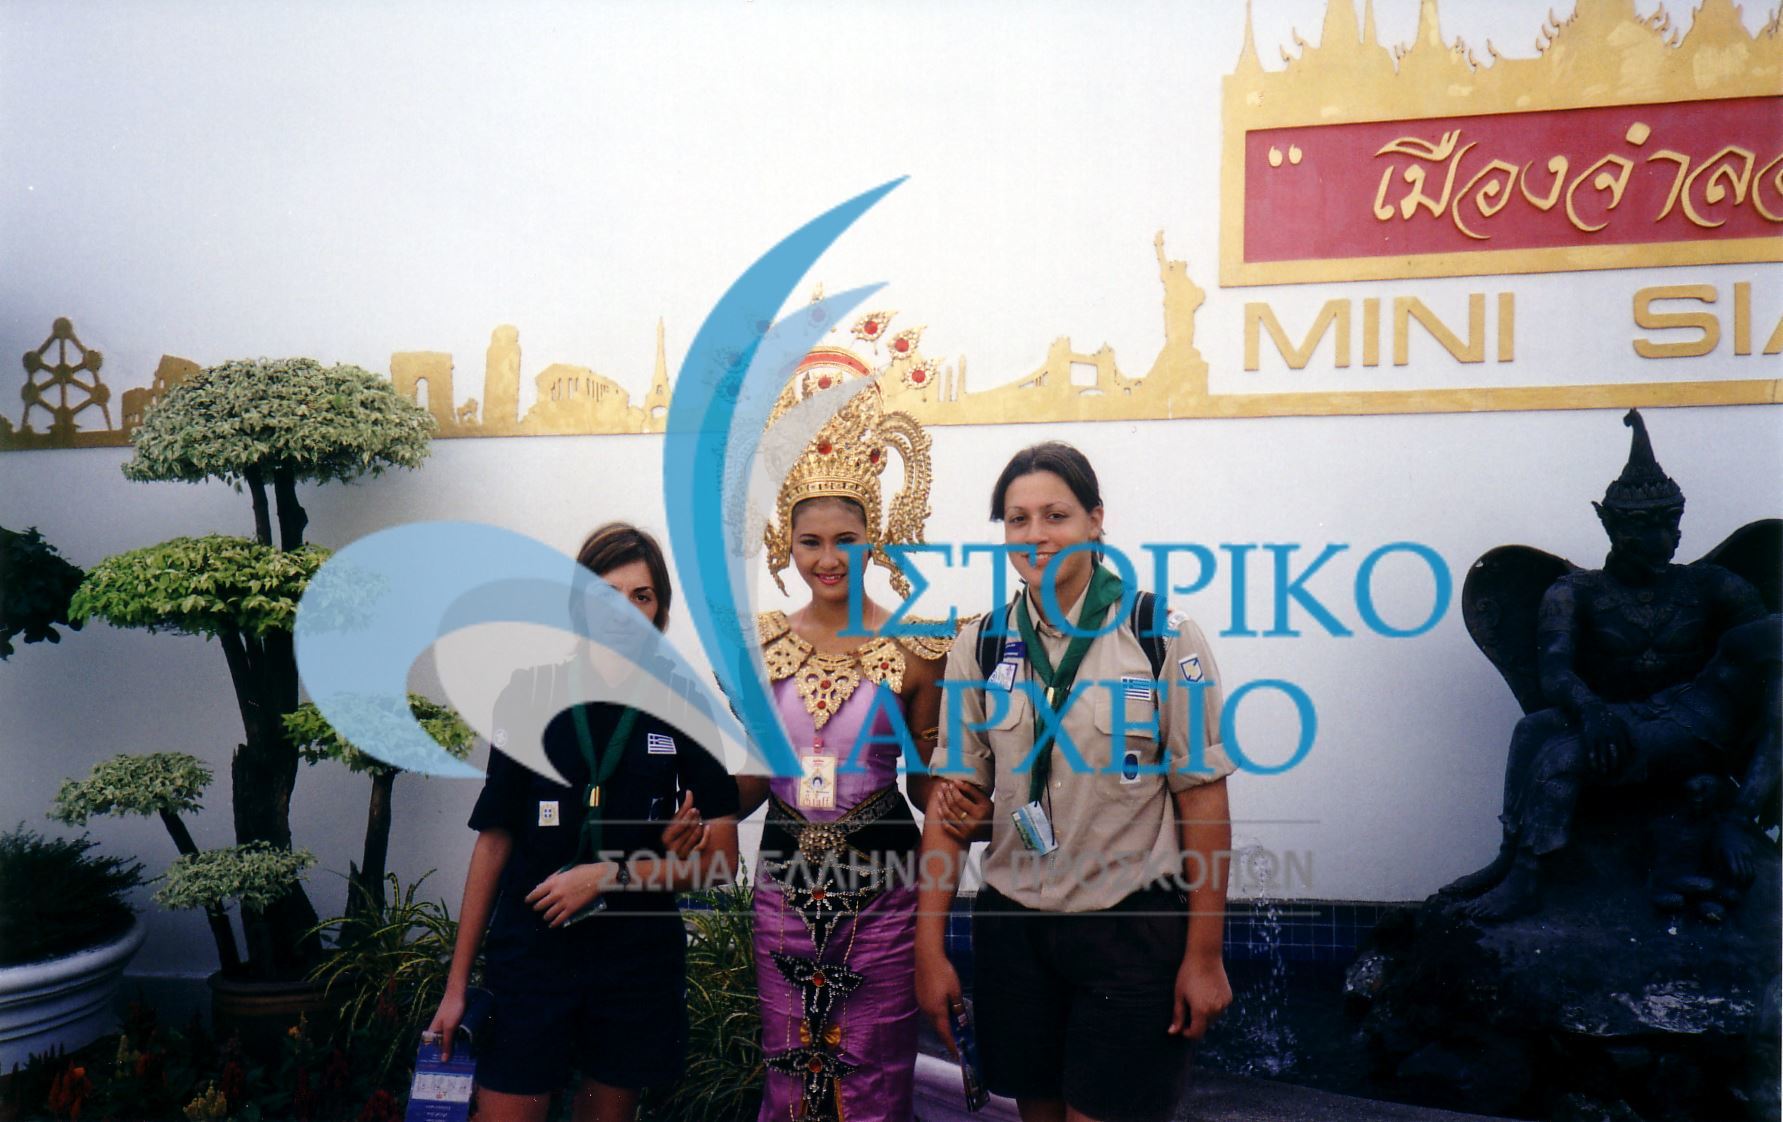 Φωτογραφίες από την ελληνική συμμετοχή στο 20ο Παγκόσμιο Τζάμπορη στην Ταϊλάνδη το 2003.